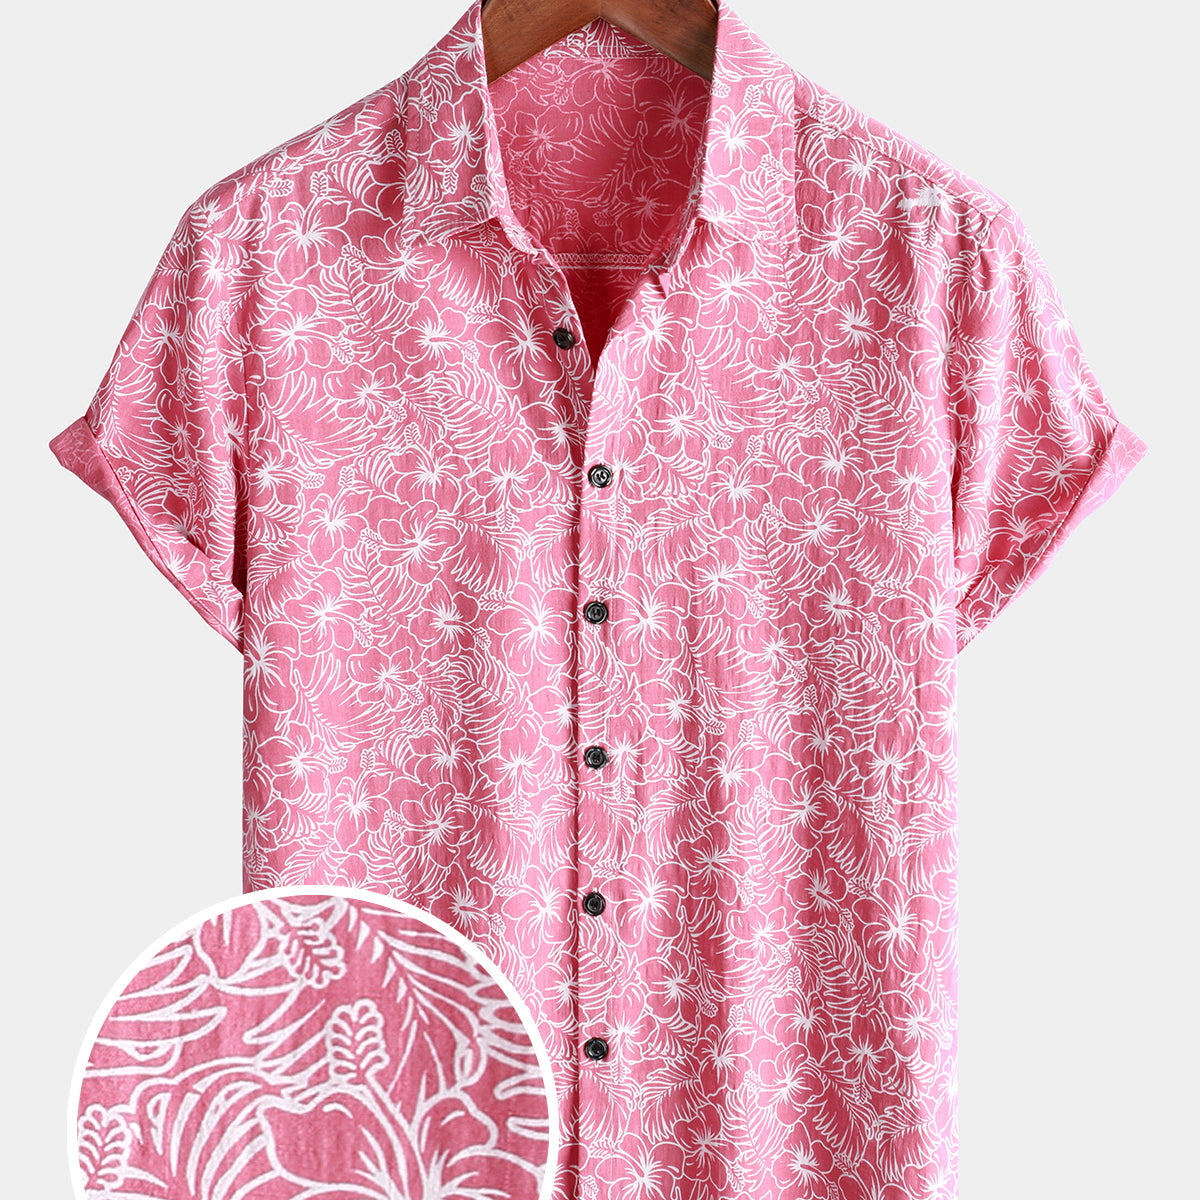 Camisa hawaiana de manga corta rosa con botones y estampado de flores navideñas de algodón para hombre